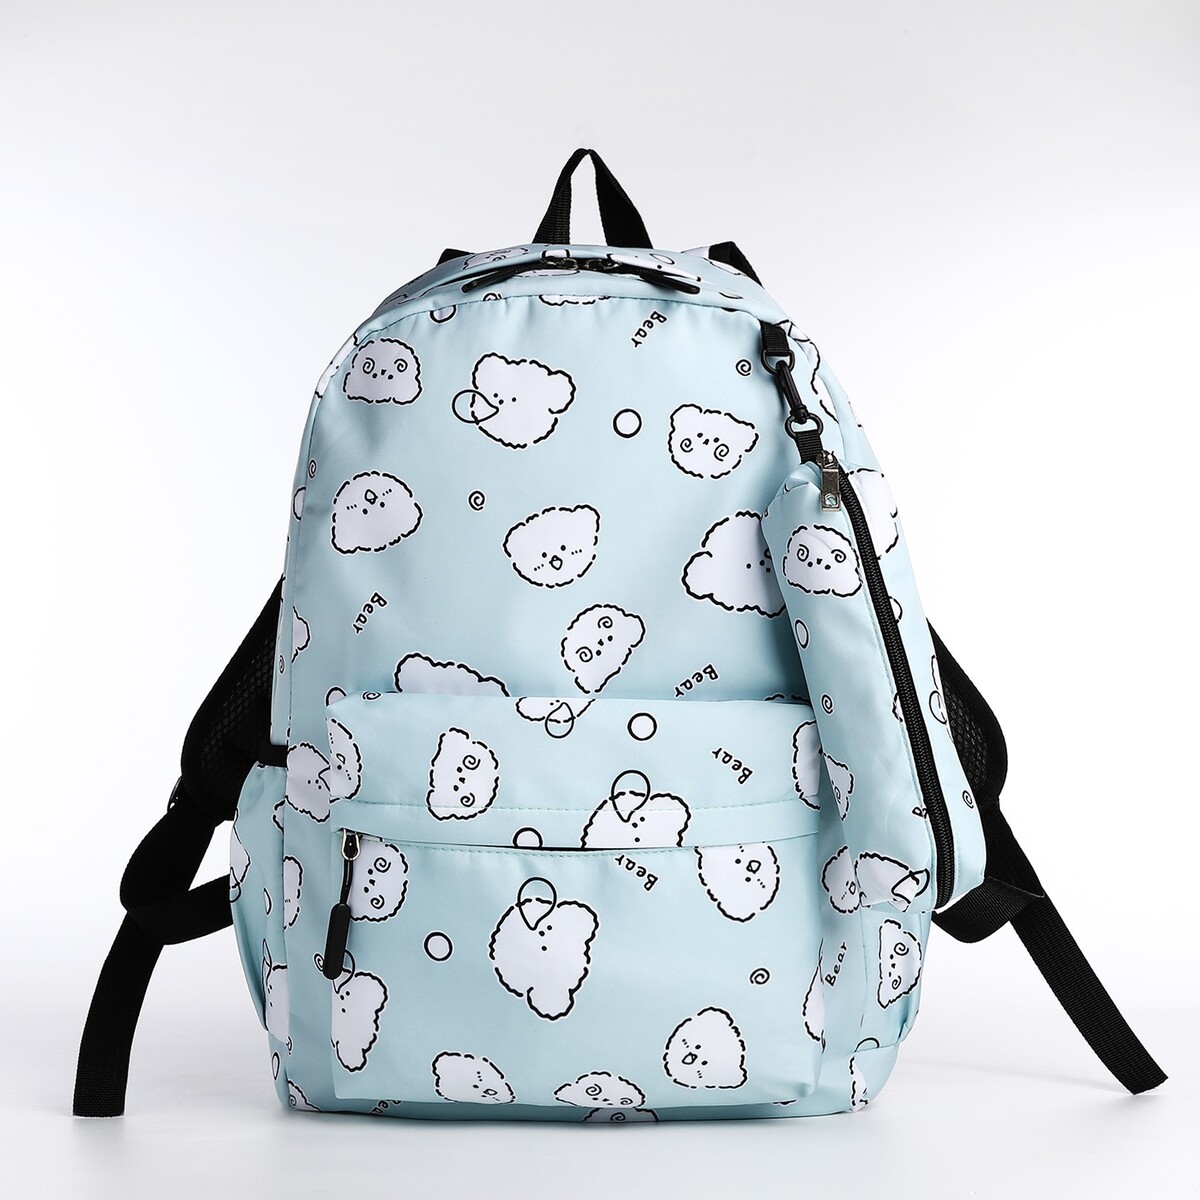 Набор рюкзак школьный из текстиля на молнии, 3 кармана, пенал, цвет бирюзовый рюкзак на молнии 3 наружных кармана бирюзовый